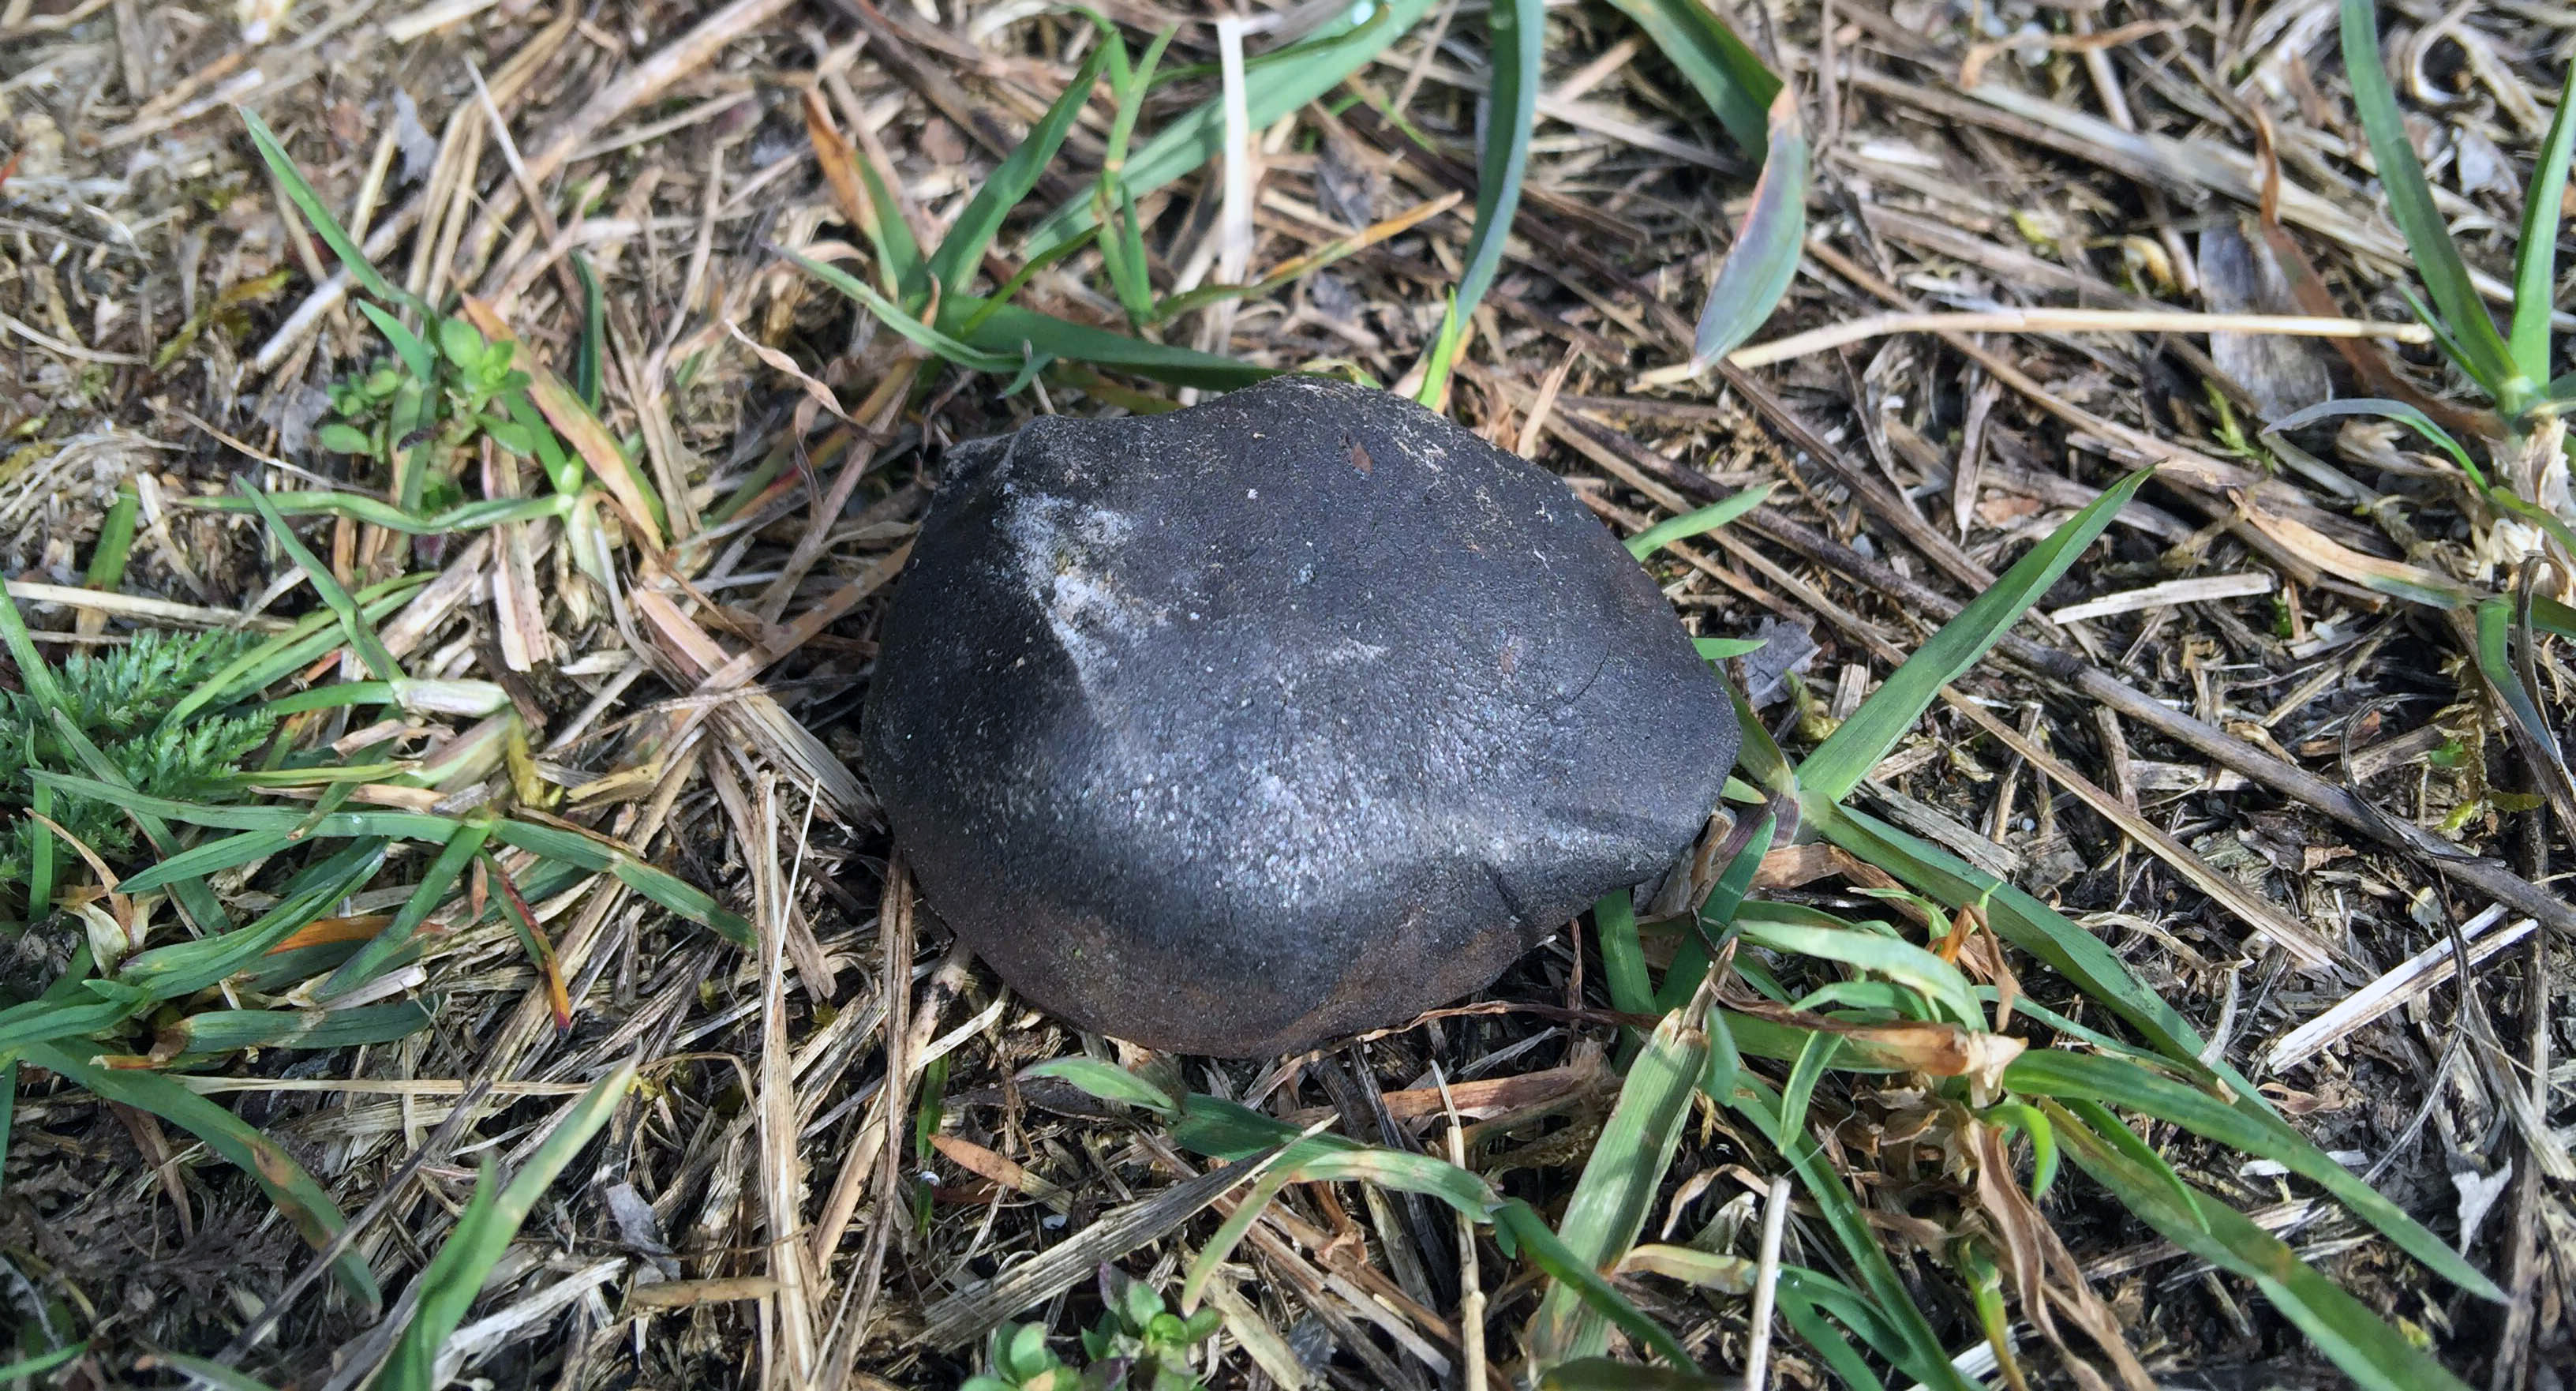 The second find (42.43 g) in situ (Photo: M. Farmer)